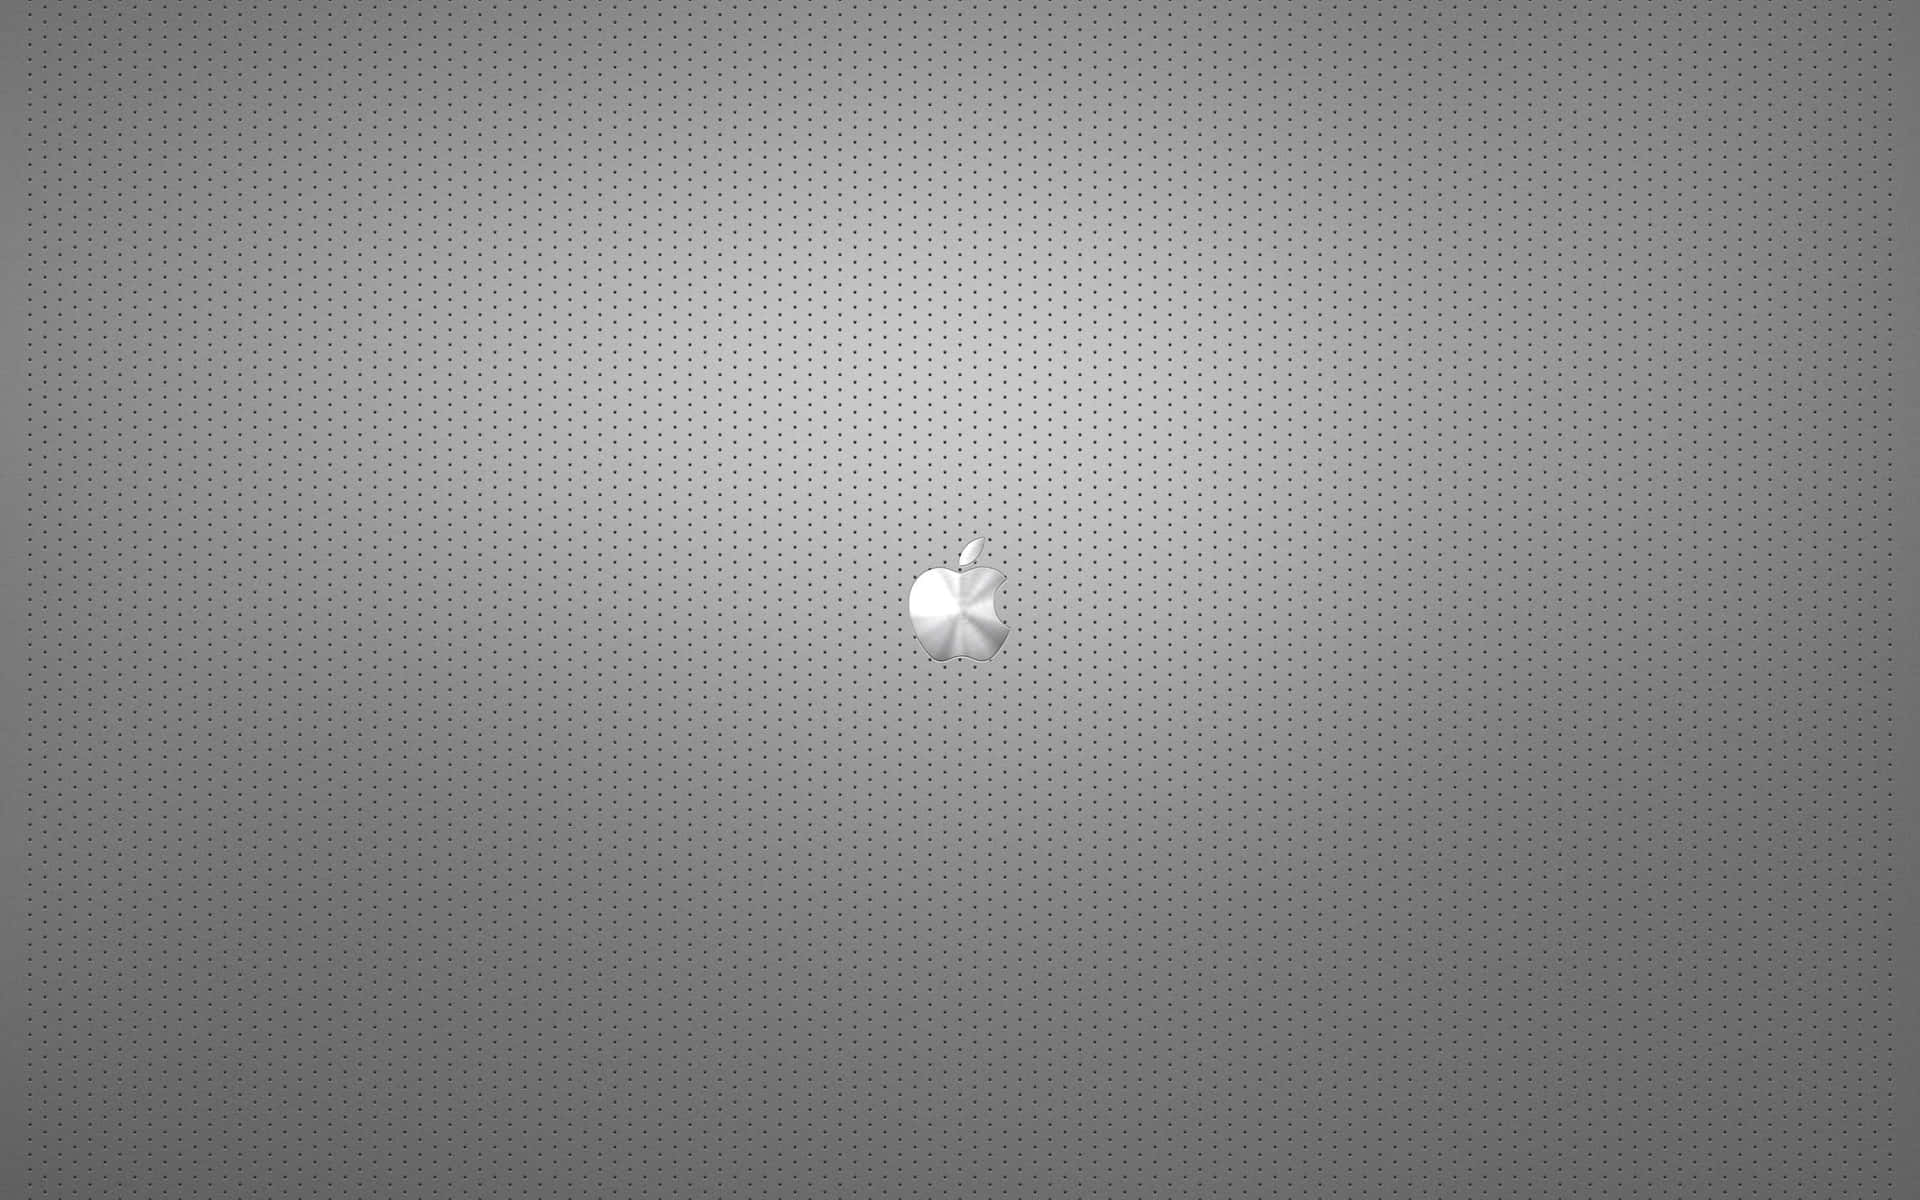 Apple Logo Wallpapers Hd